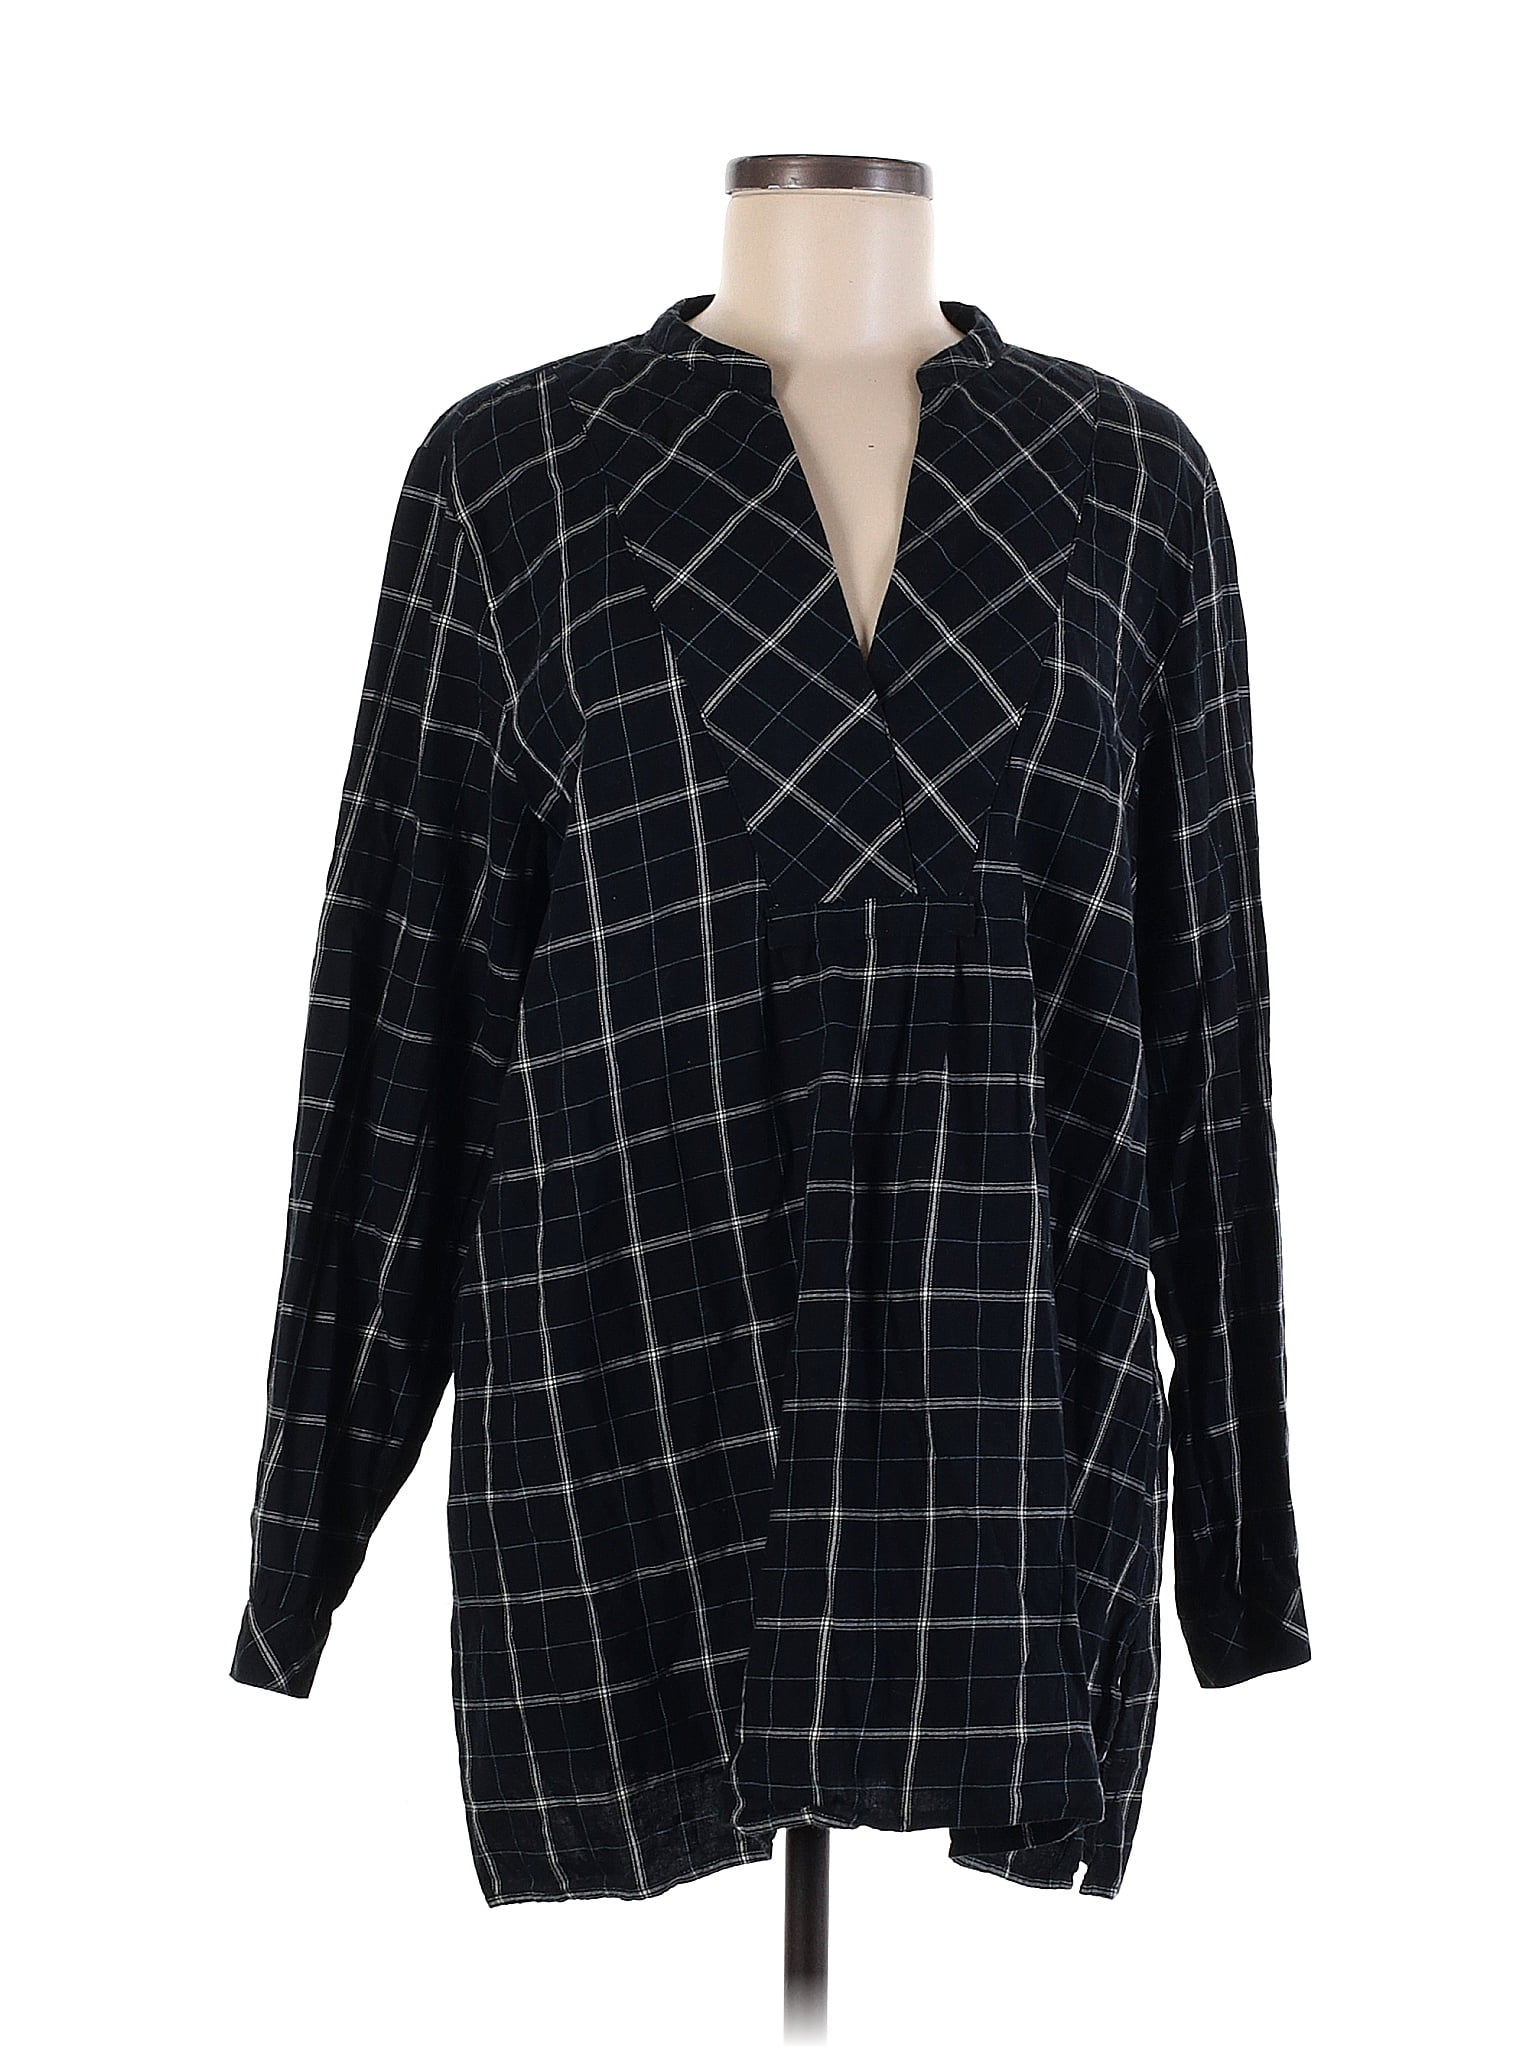 J JILL TUNIC Womens Medium Black Long Sleeve Wearever Top £36.95 - PicClick  UK